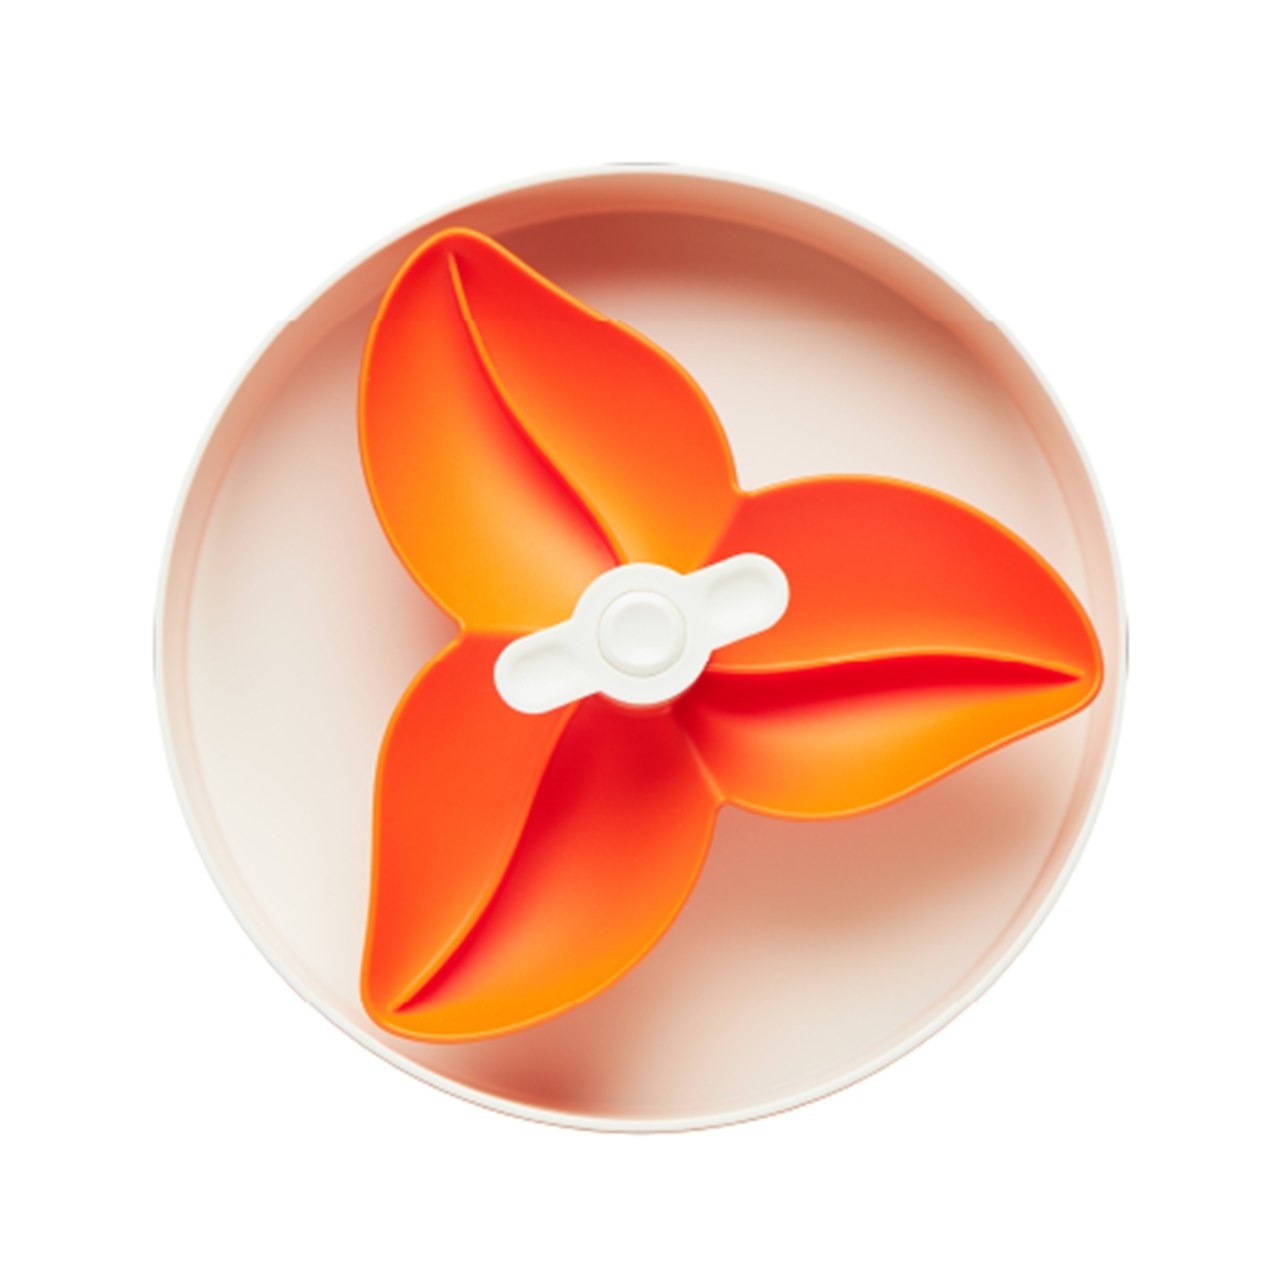 интерактивная миска petdreamhouse спин бугенвиллея оранжевая для медленного кормления PetDreamHouse PetDreamHouse интерактивная система кормления СПИН - Бугенвиллея, оранжевая (600 г)